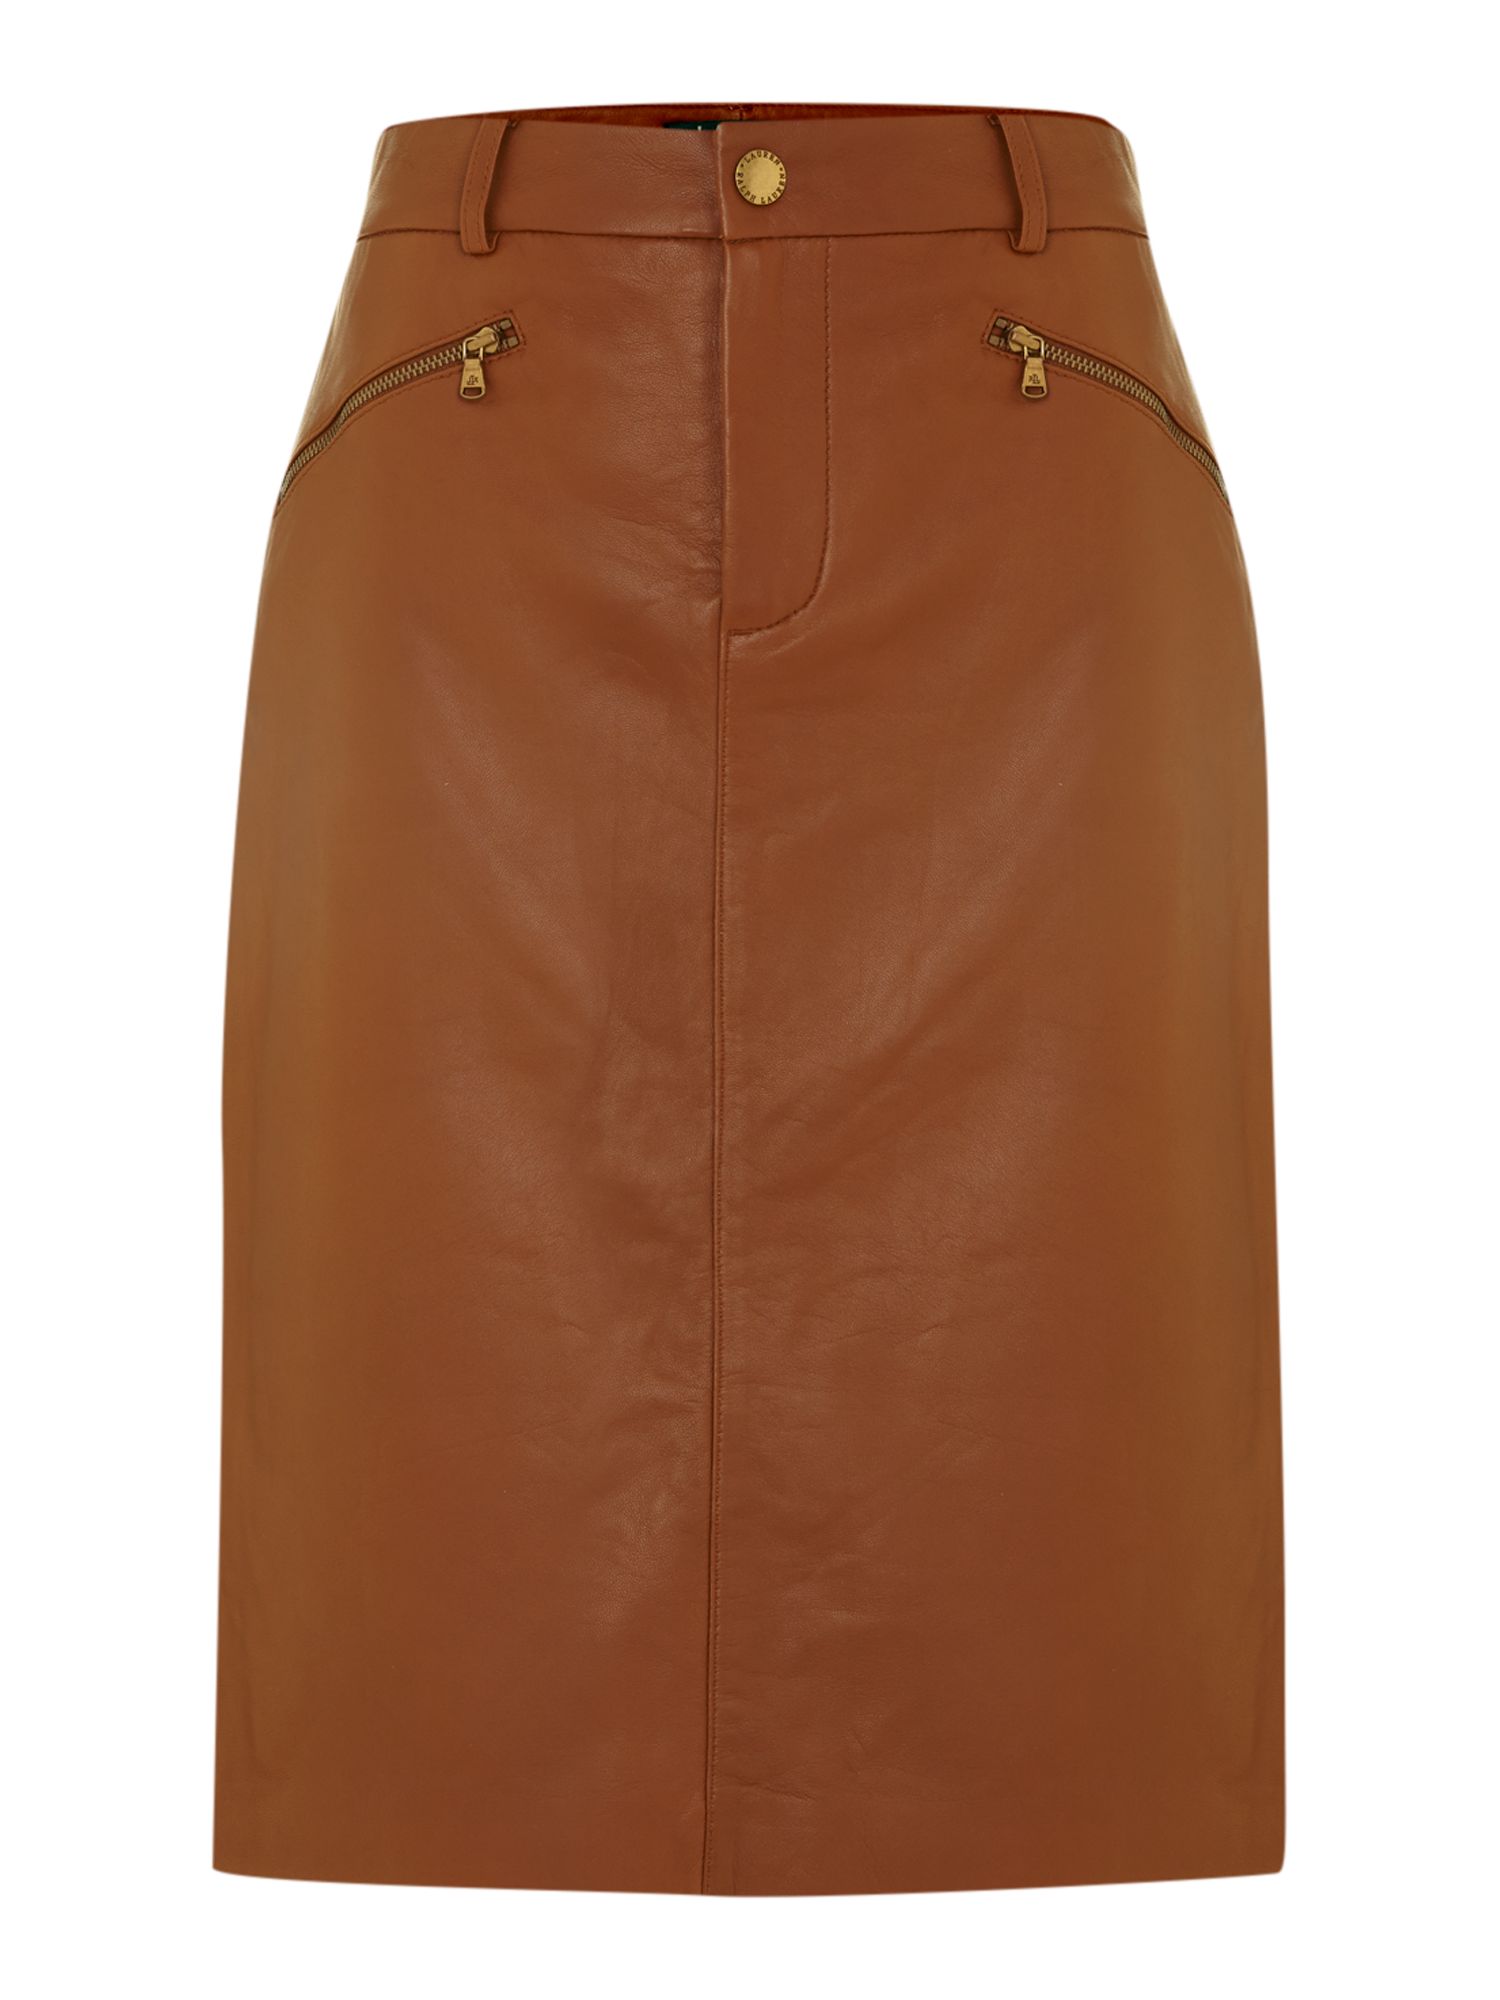 Lauren By Ralph Lauren Leather Pencil Skirt with Zip Detail in Brown ...